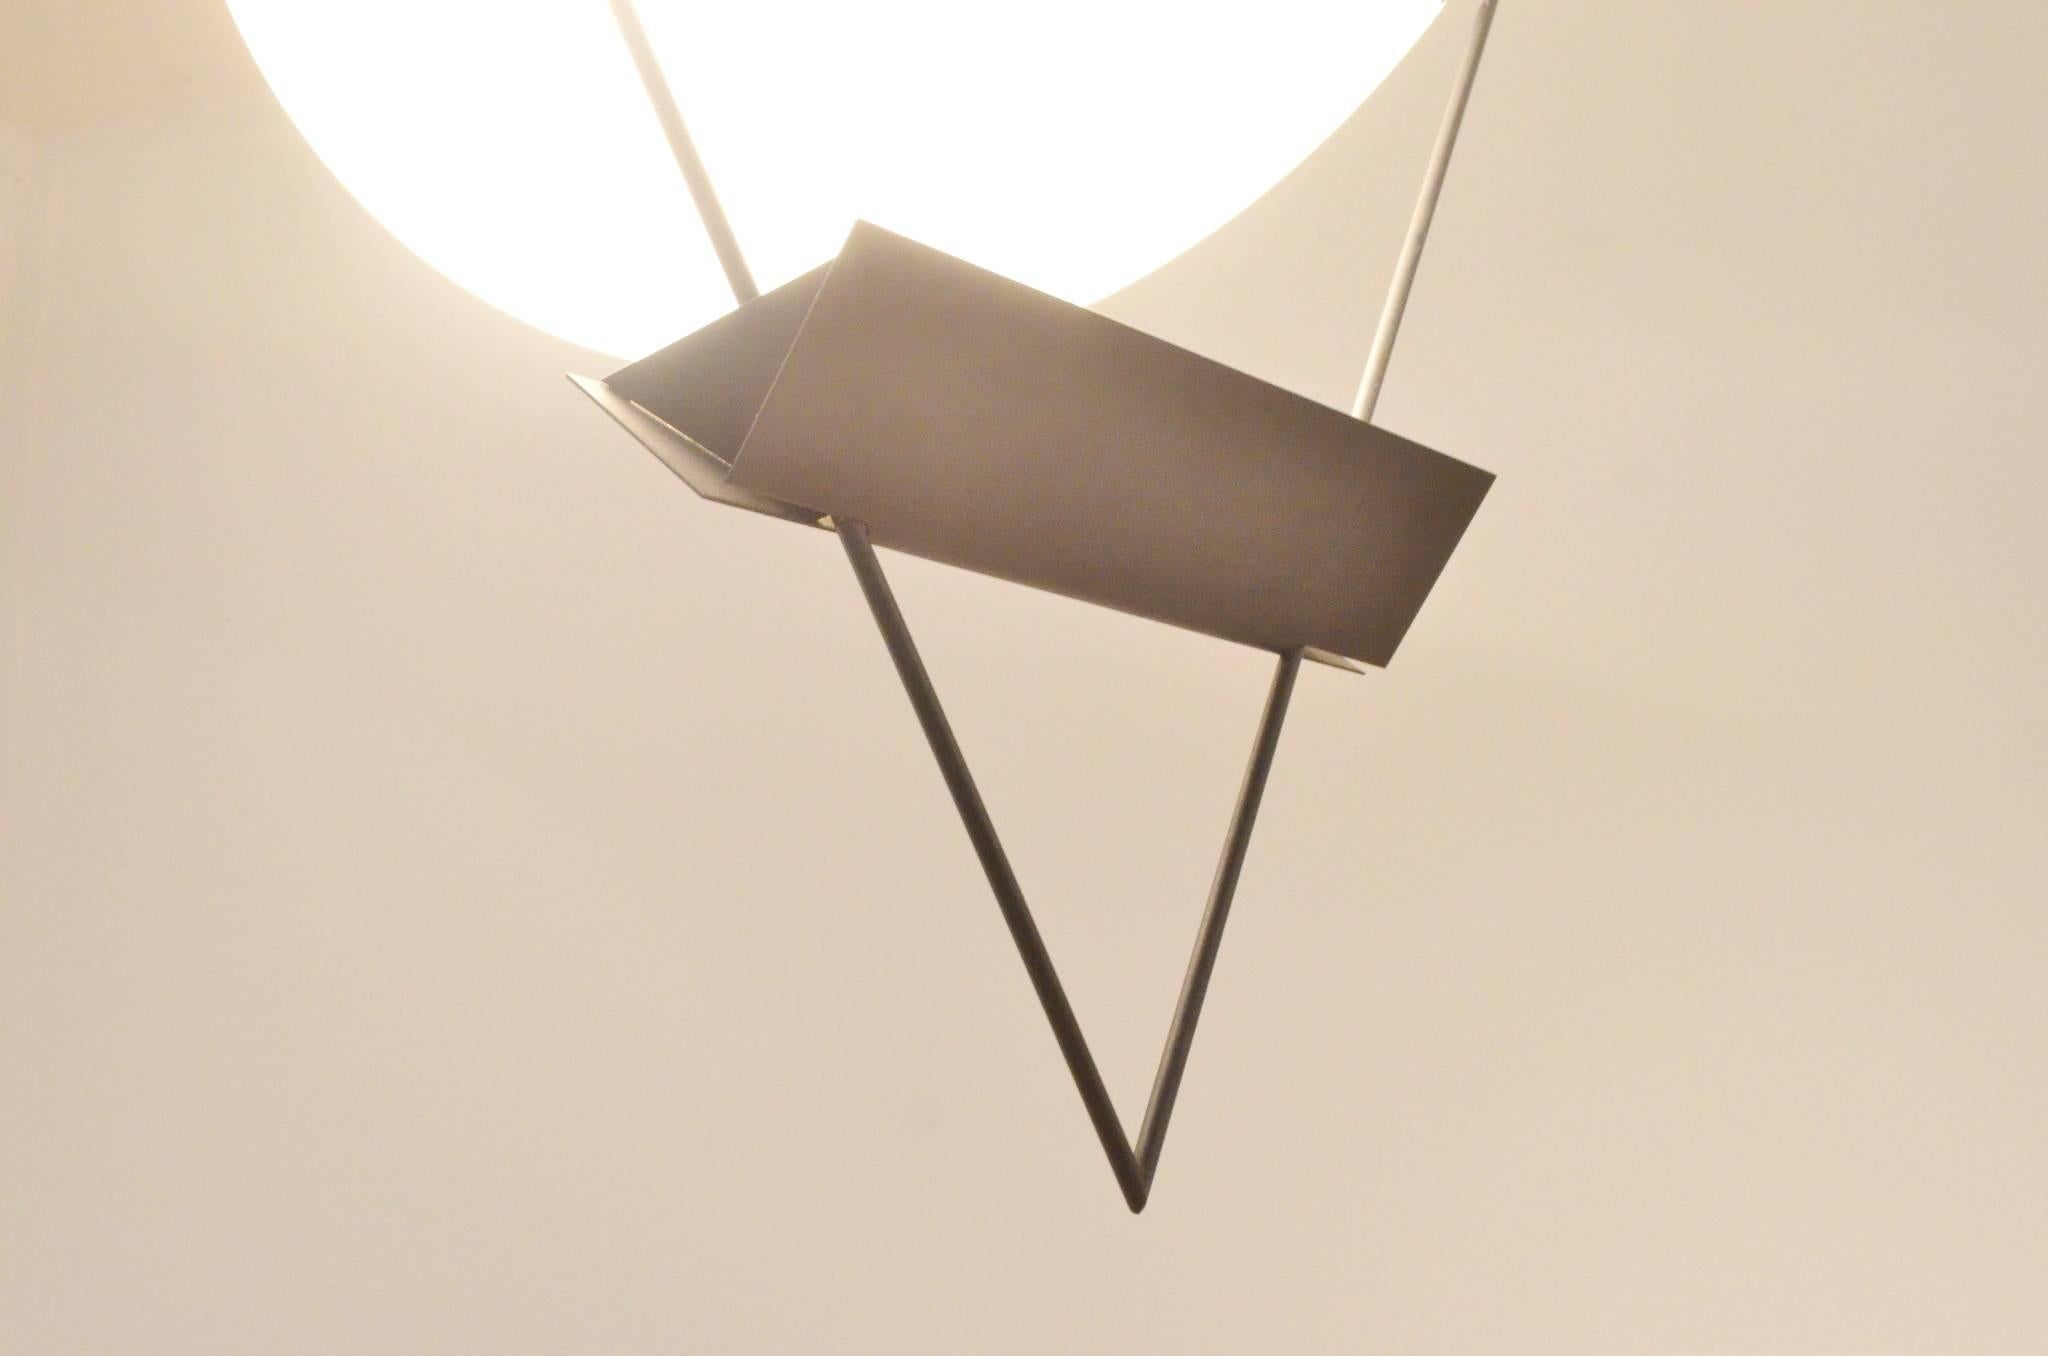 Metal Italian Design Mario Botta for Artemide Triangle Pendant Lamp